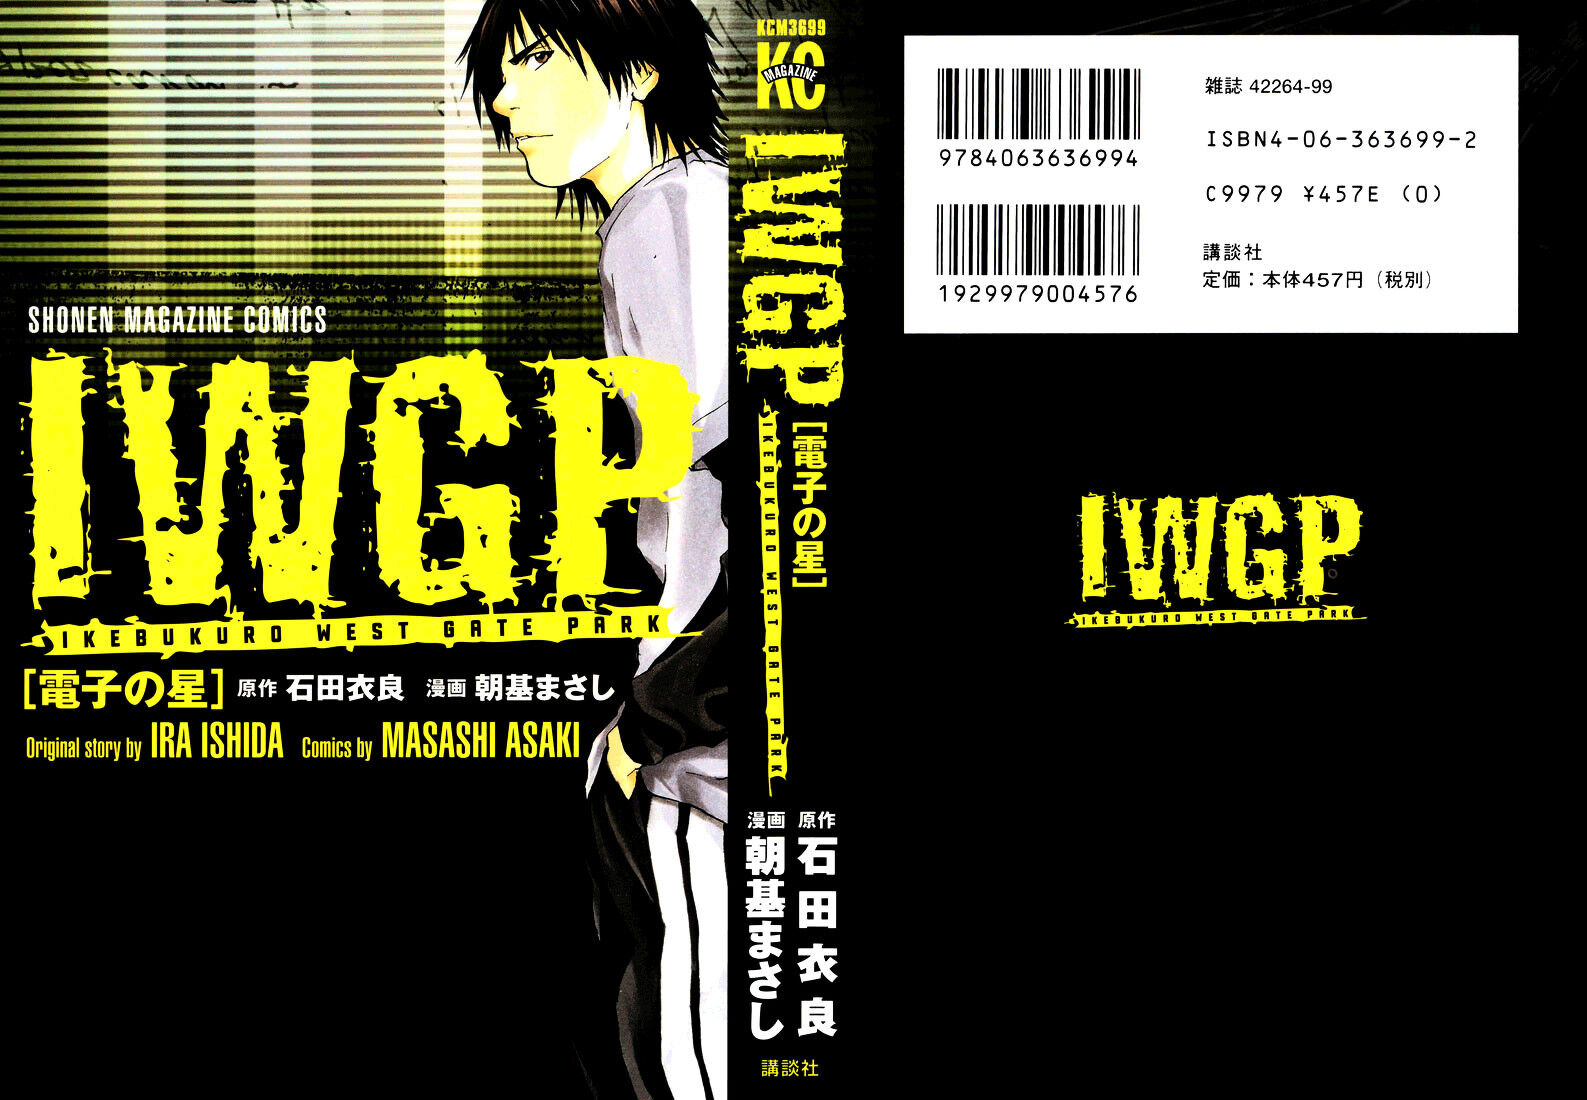 Ikebukuro West Gate Park (IWGP) #1 – Primeiras impressões - Lacradores  Desintoxicados